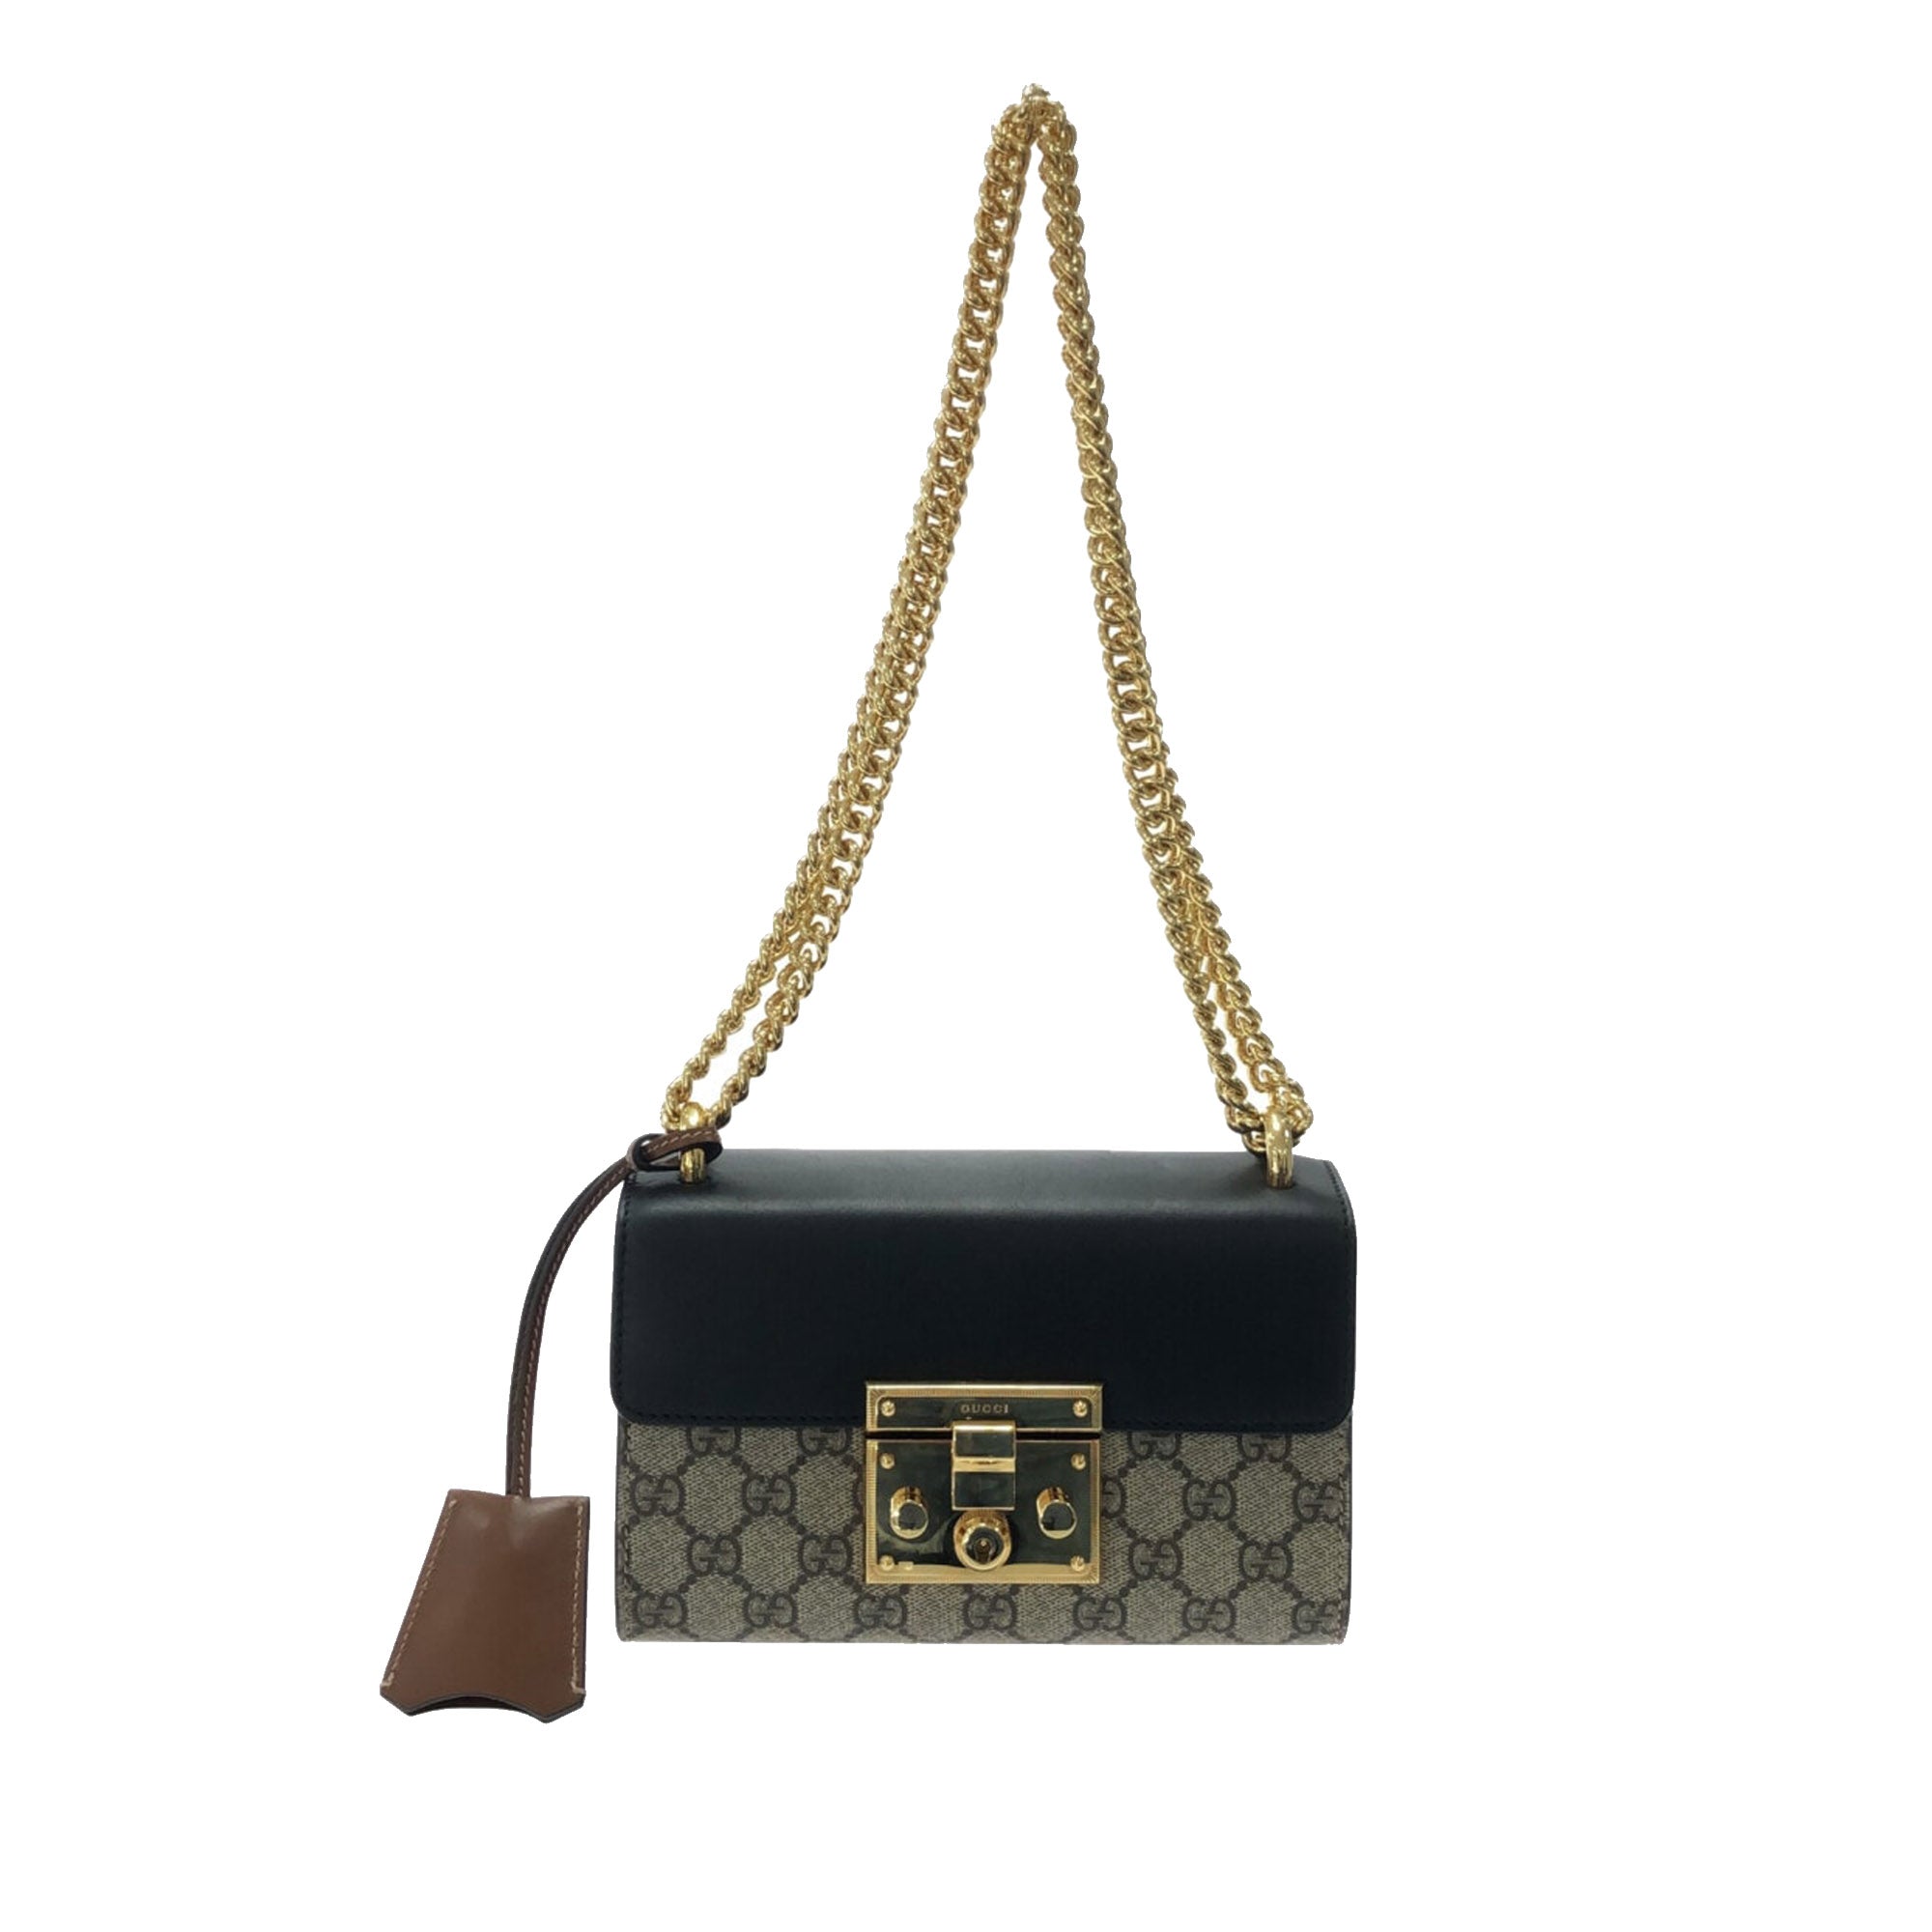 Gucci padlock bag gg supreme